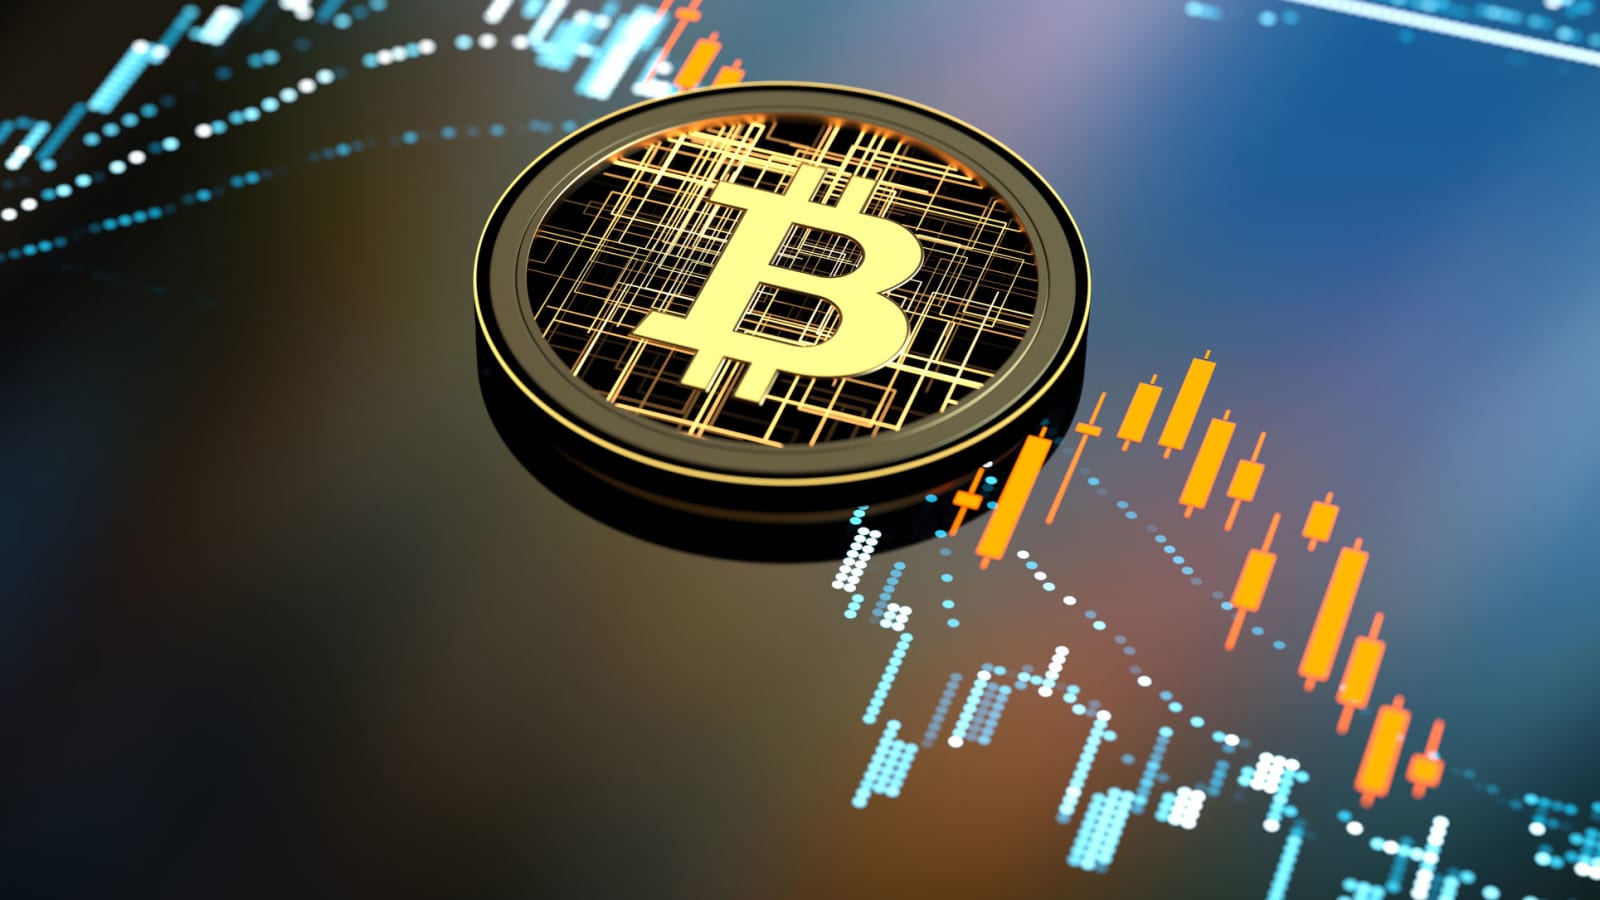 Neka apie nauj prekybos technologij naudojant bitkoin